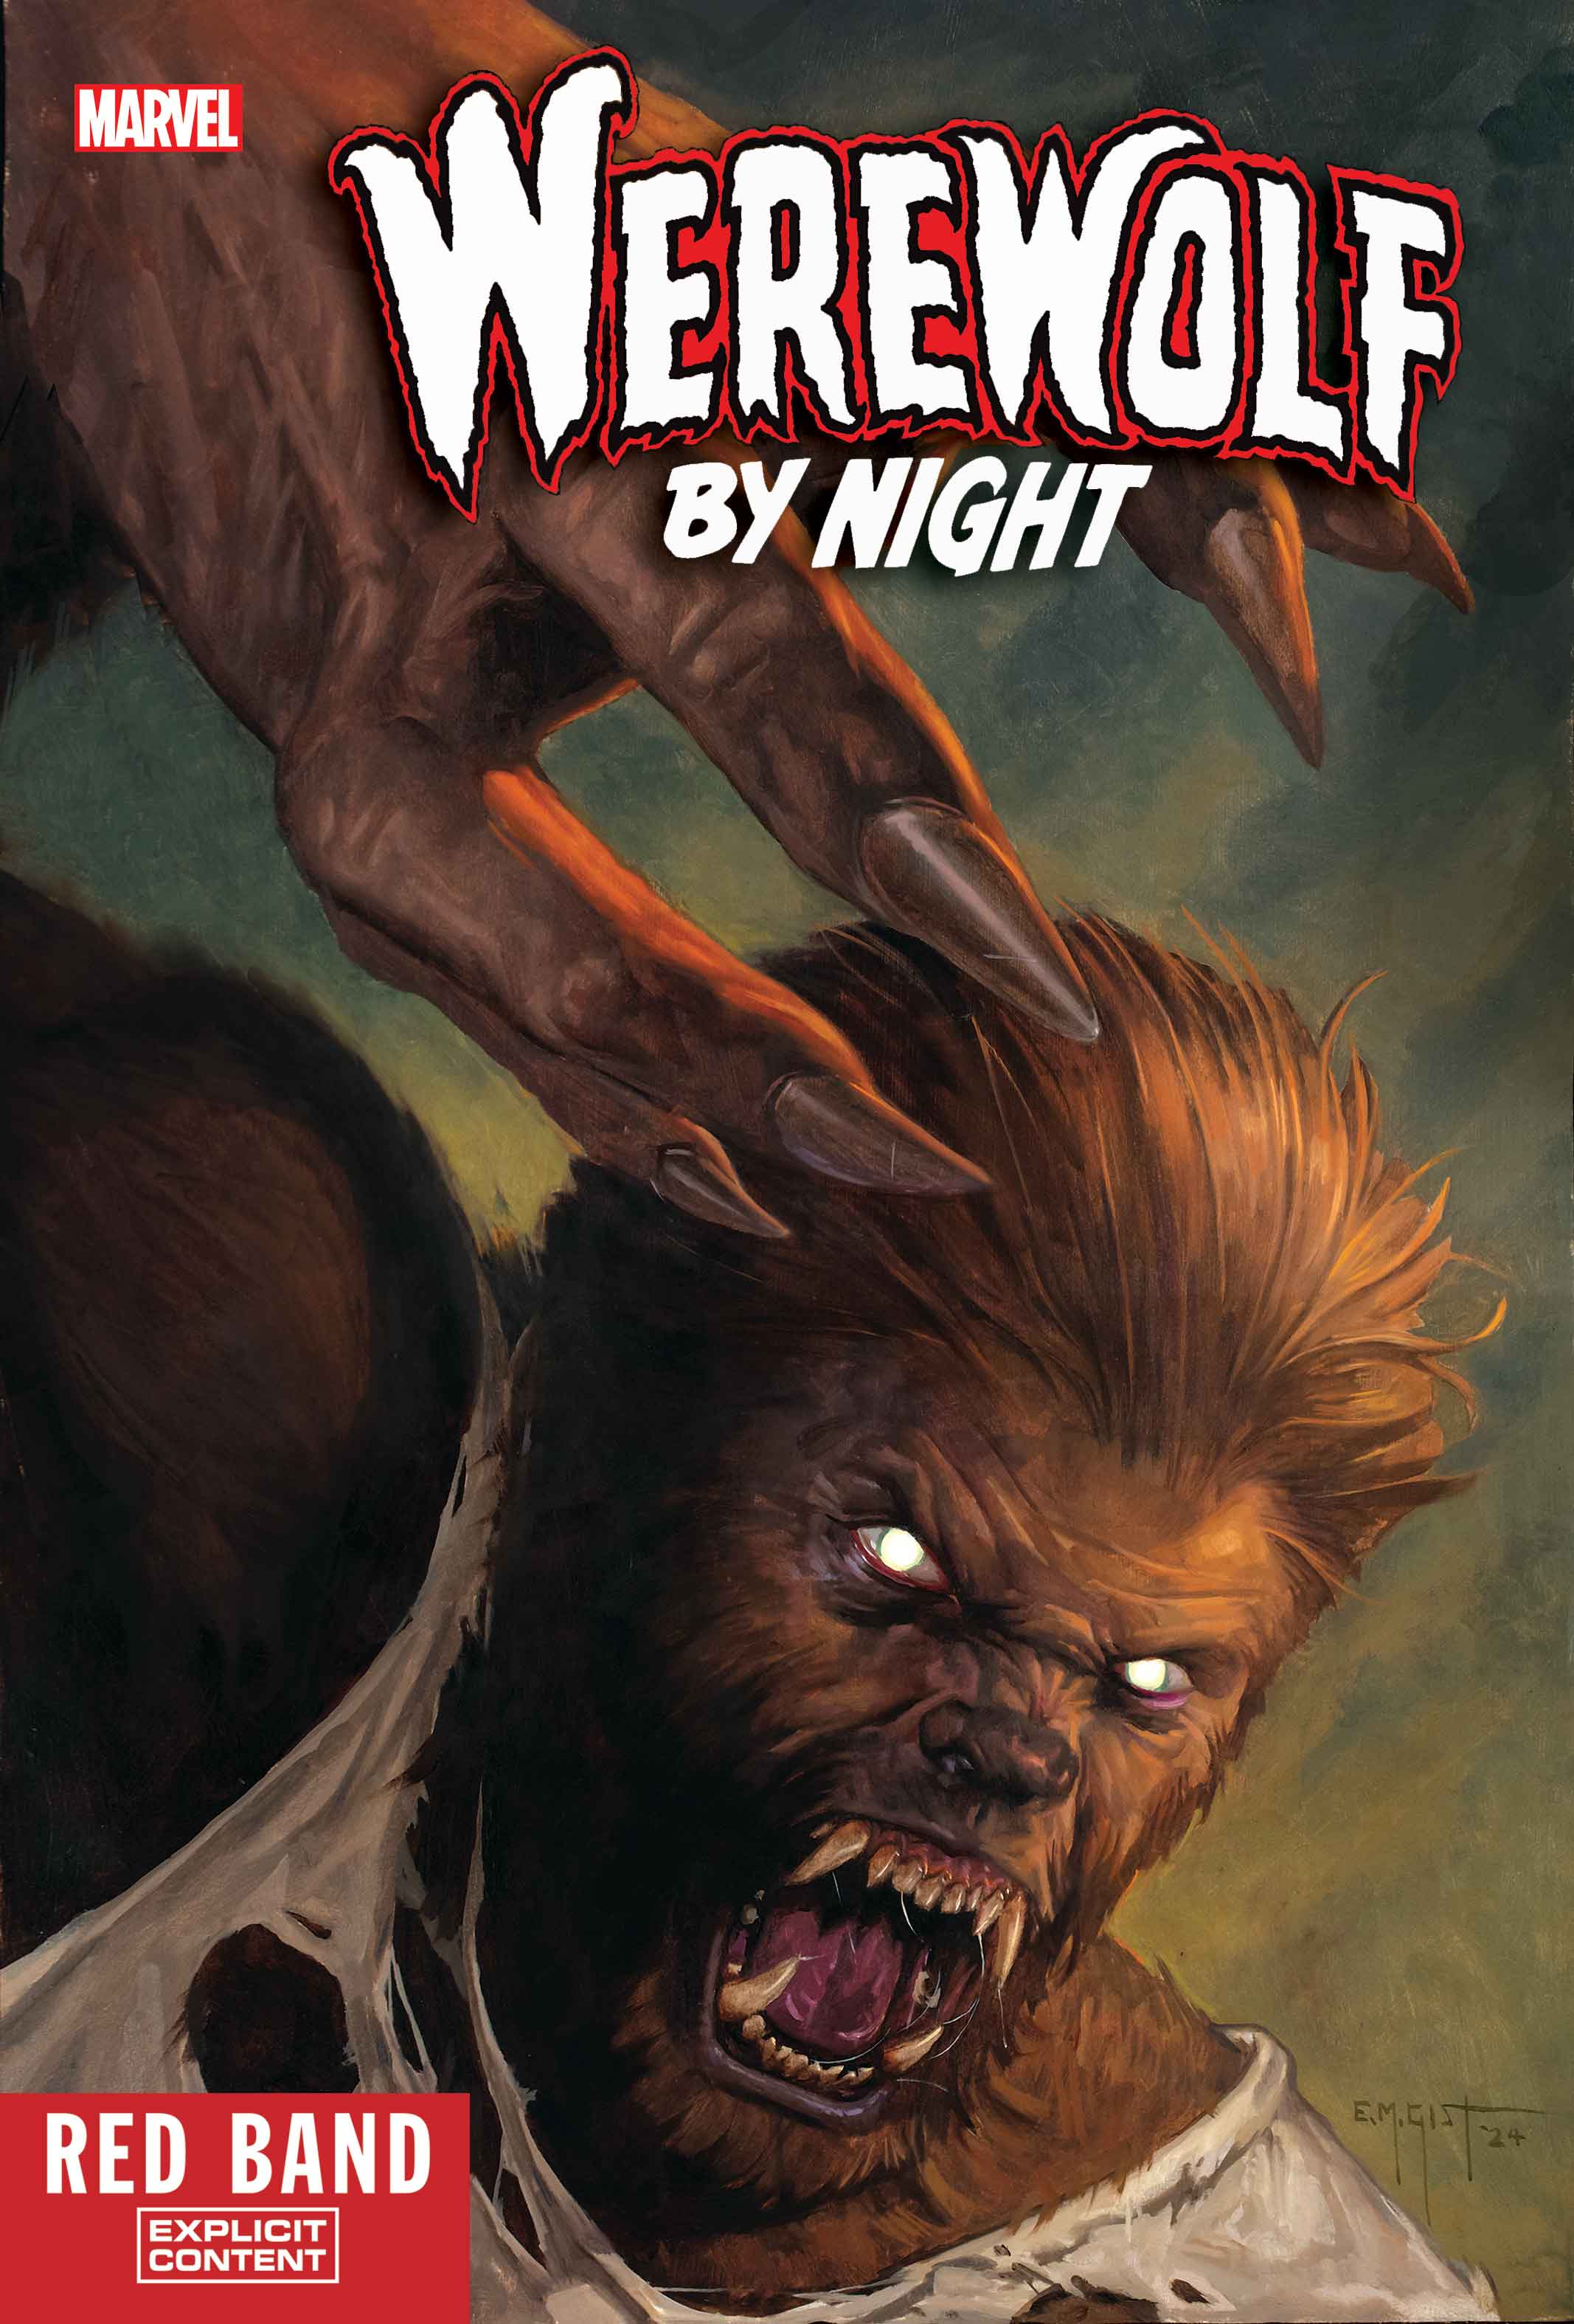 Werewolf by Night #1